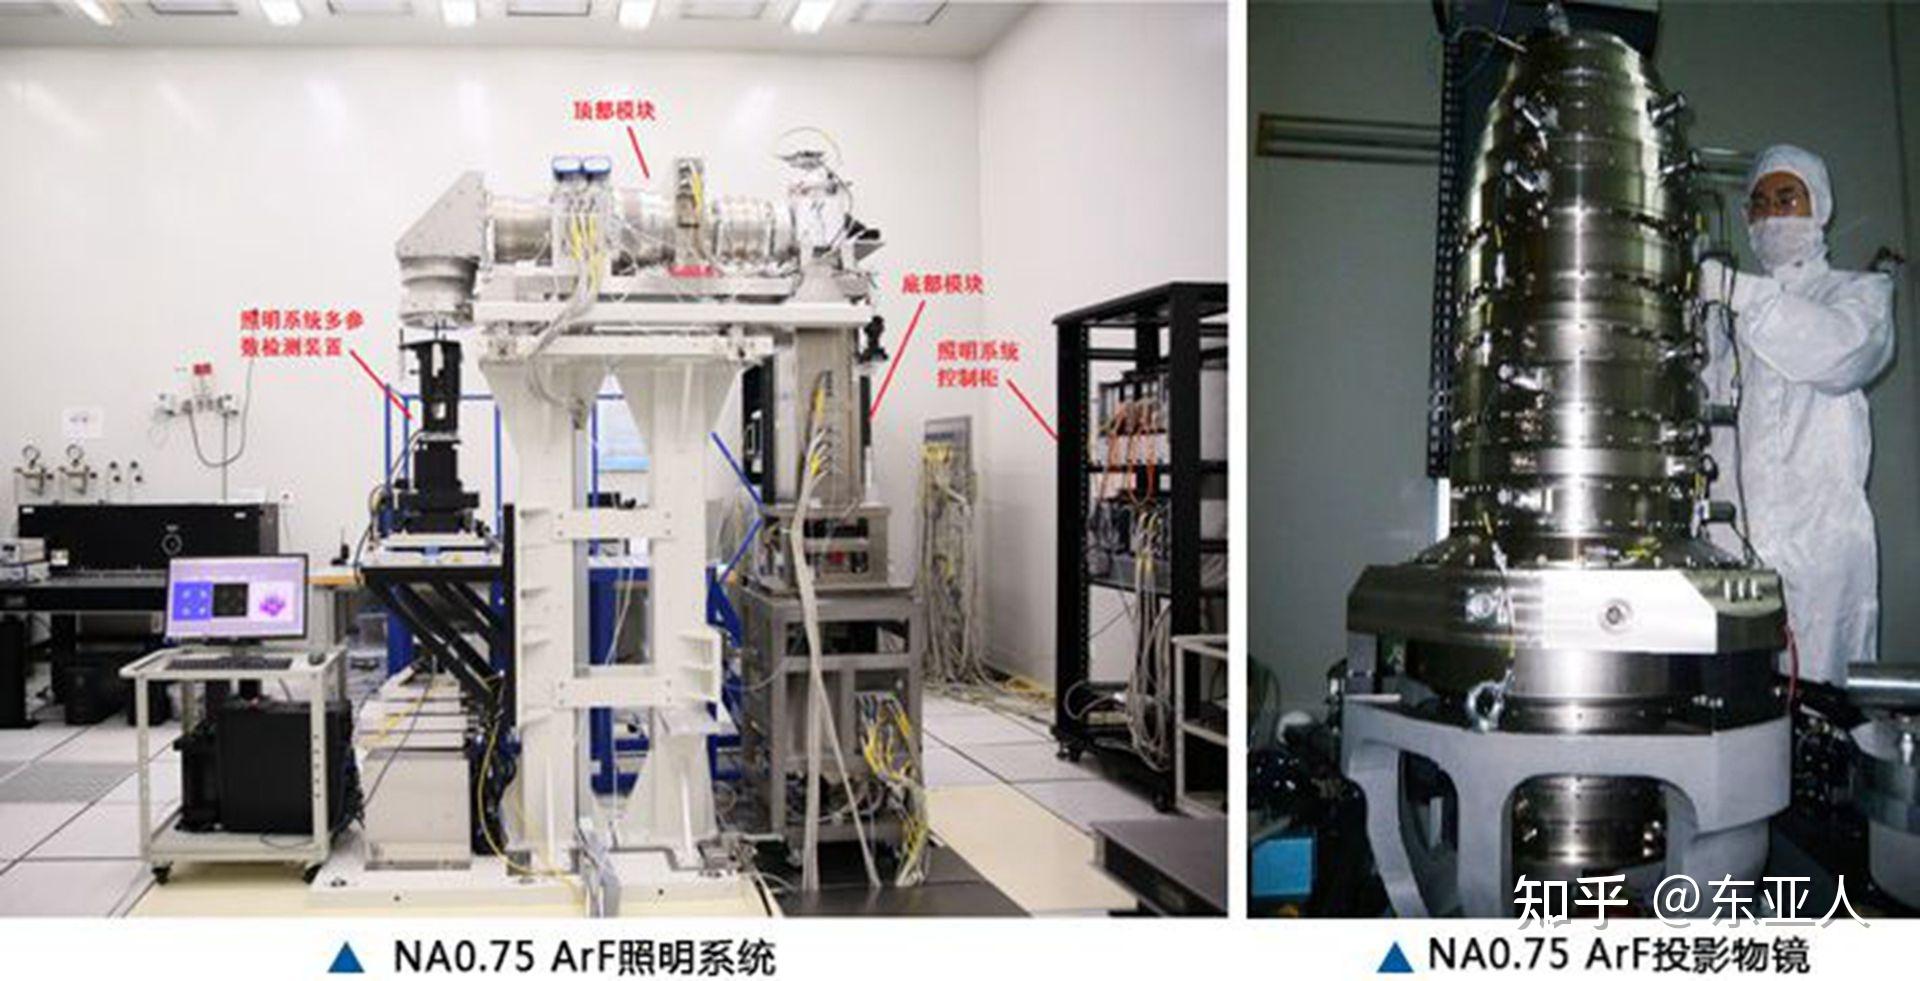 中国自研光刻胶在加速替换日本光刻胶，5纳米光刻胶即将投入使用 - OFweek新材料网